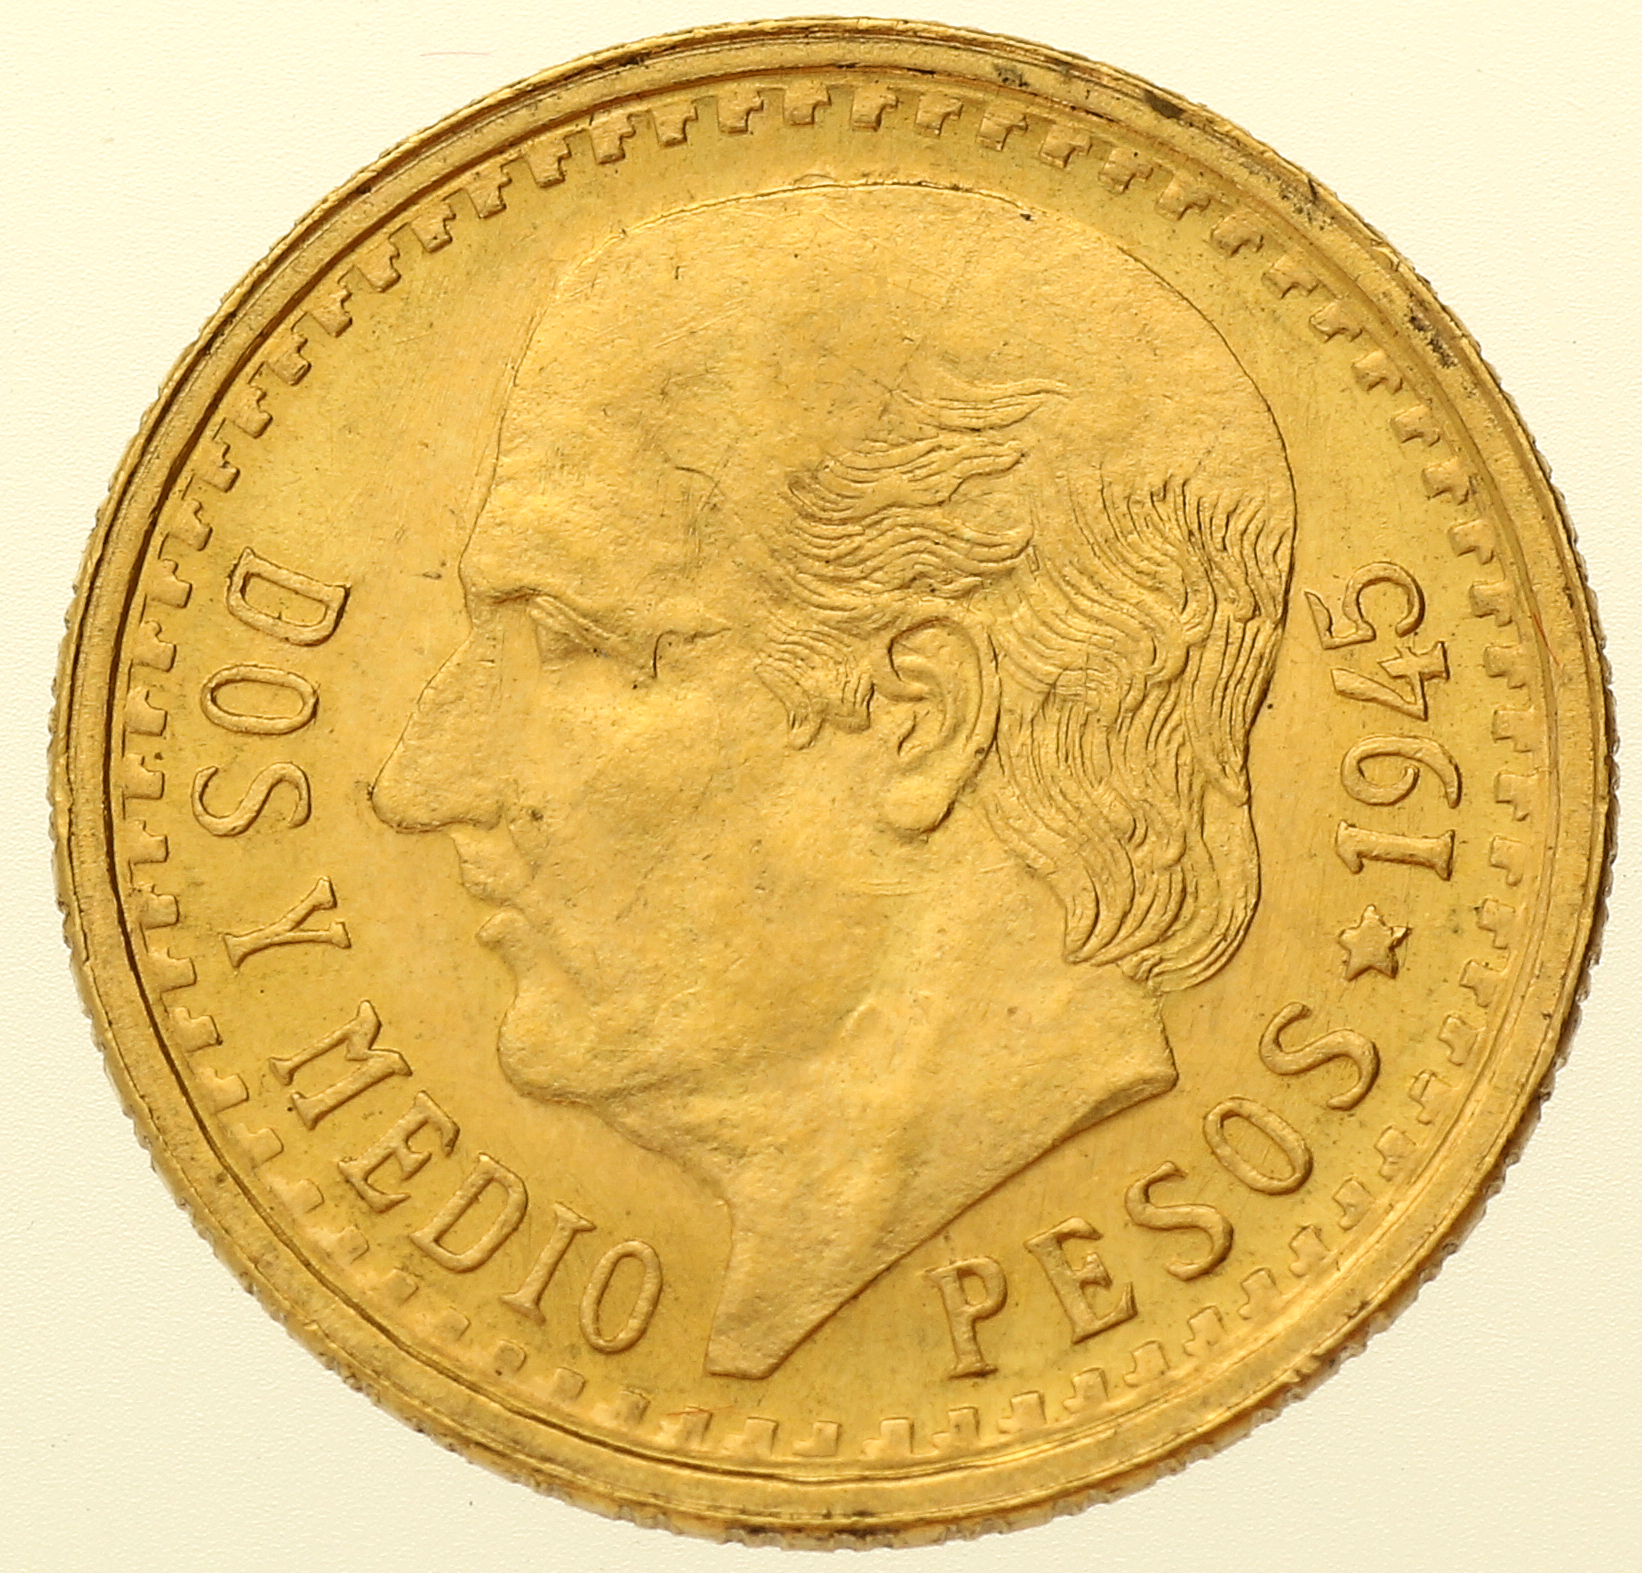 2.5 Pesos - Mexico - 1945 (Restrike)